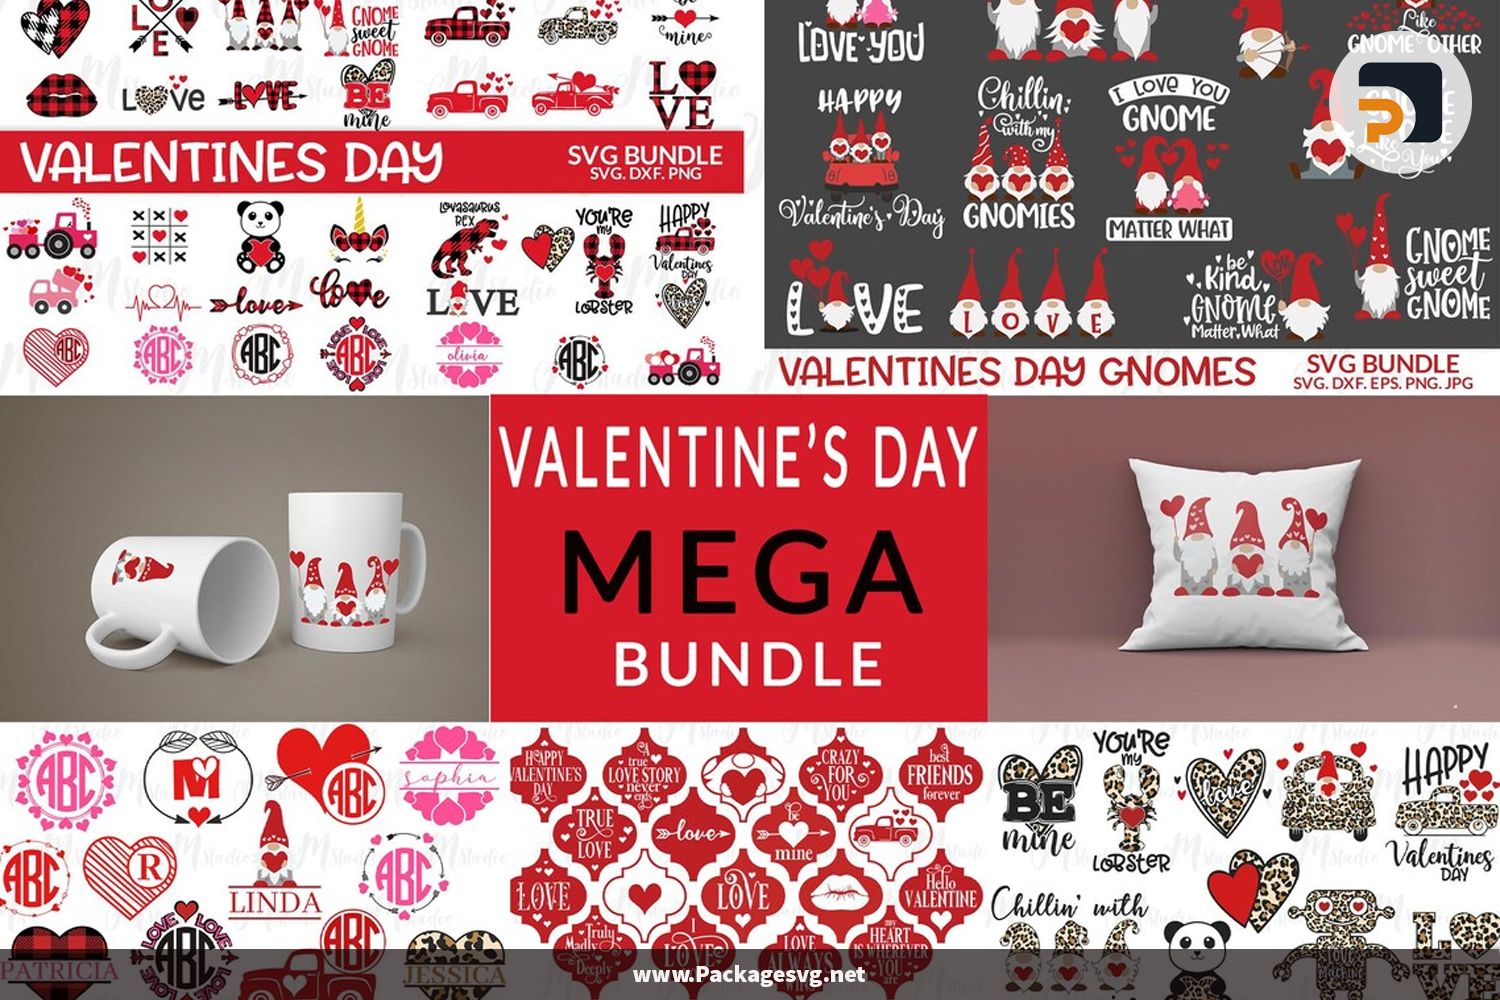 Valentine's Day SVG Mega Bundle